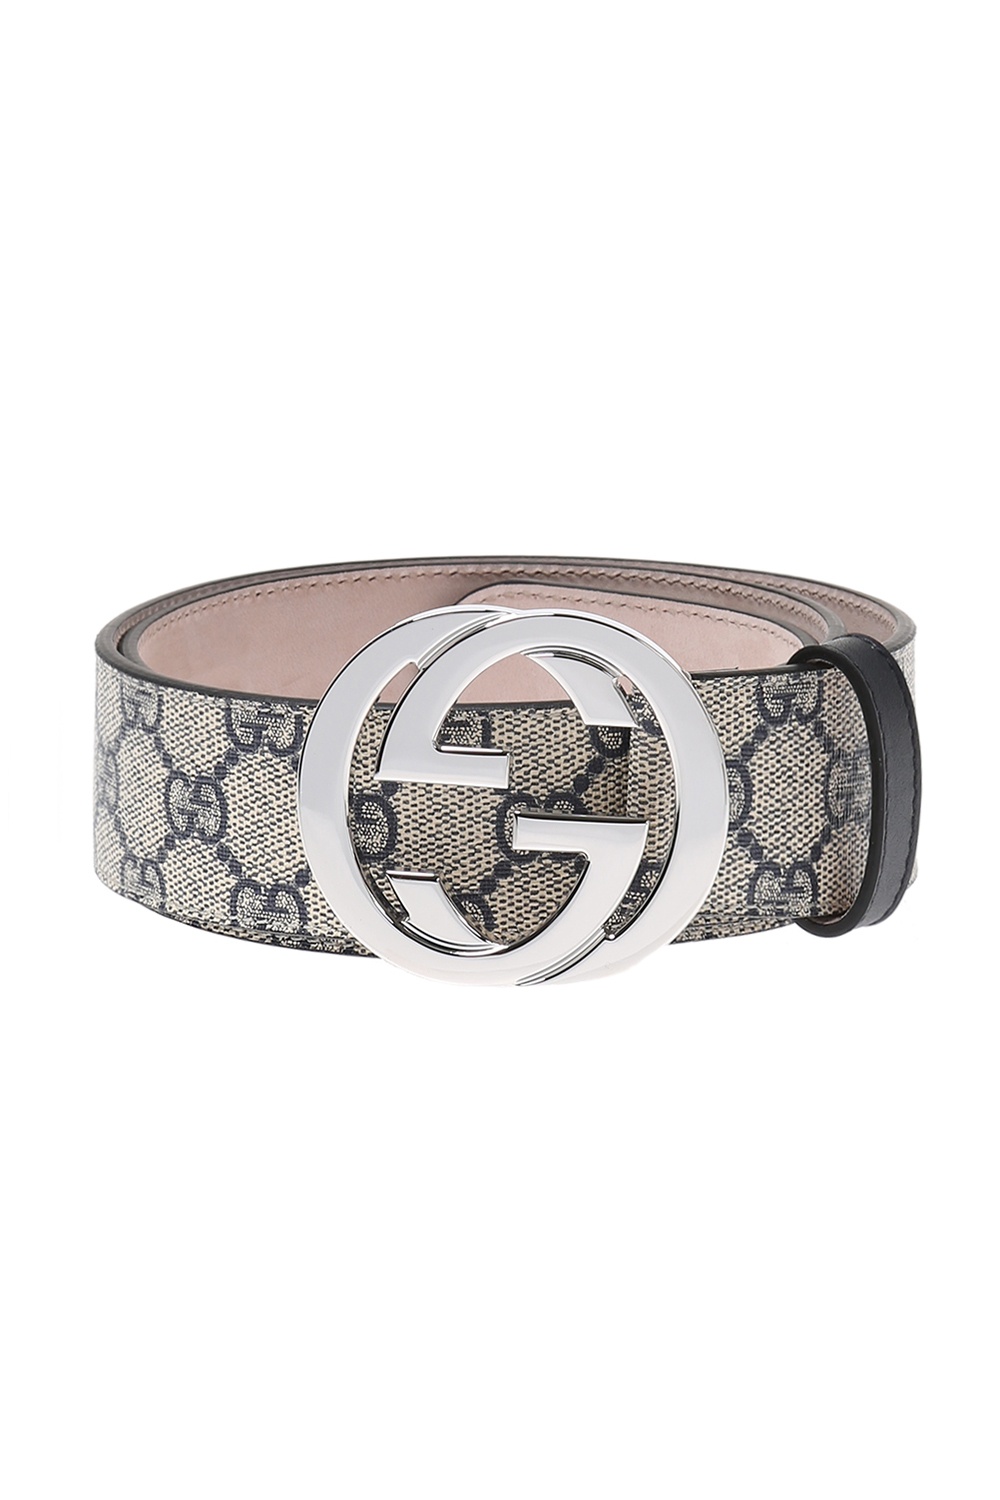 Gucci, Accessories, Gucci Gg Supreme Monogram Interlocking G Belt In Navy